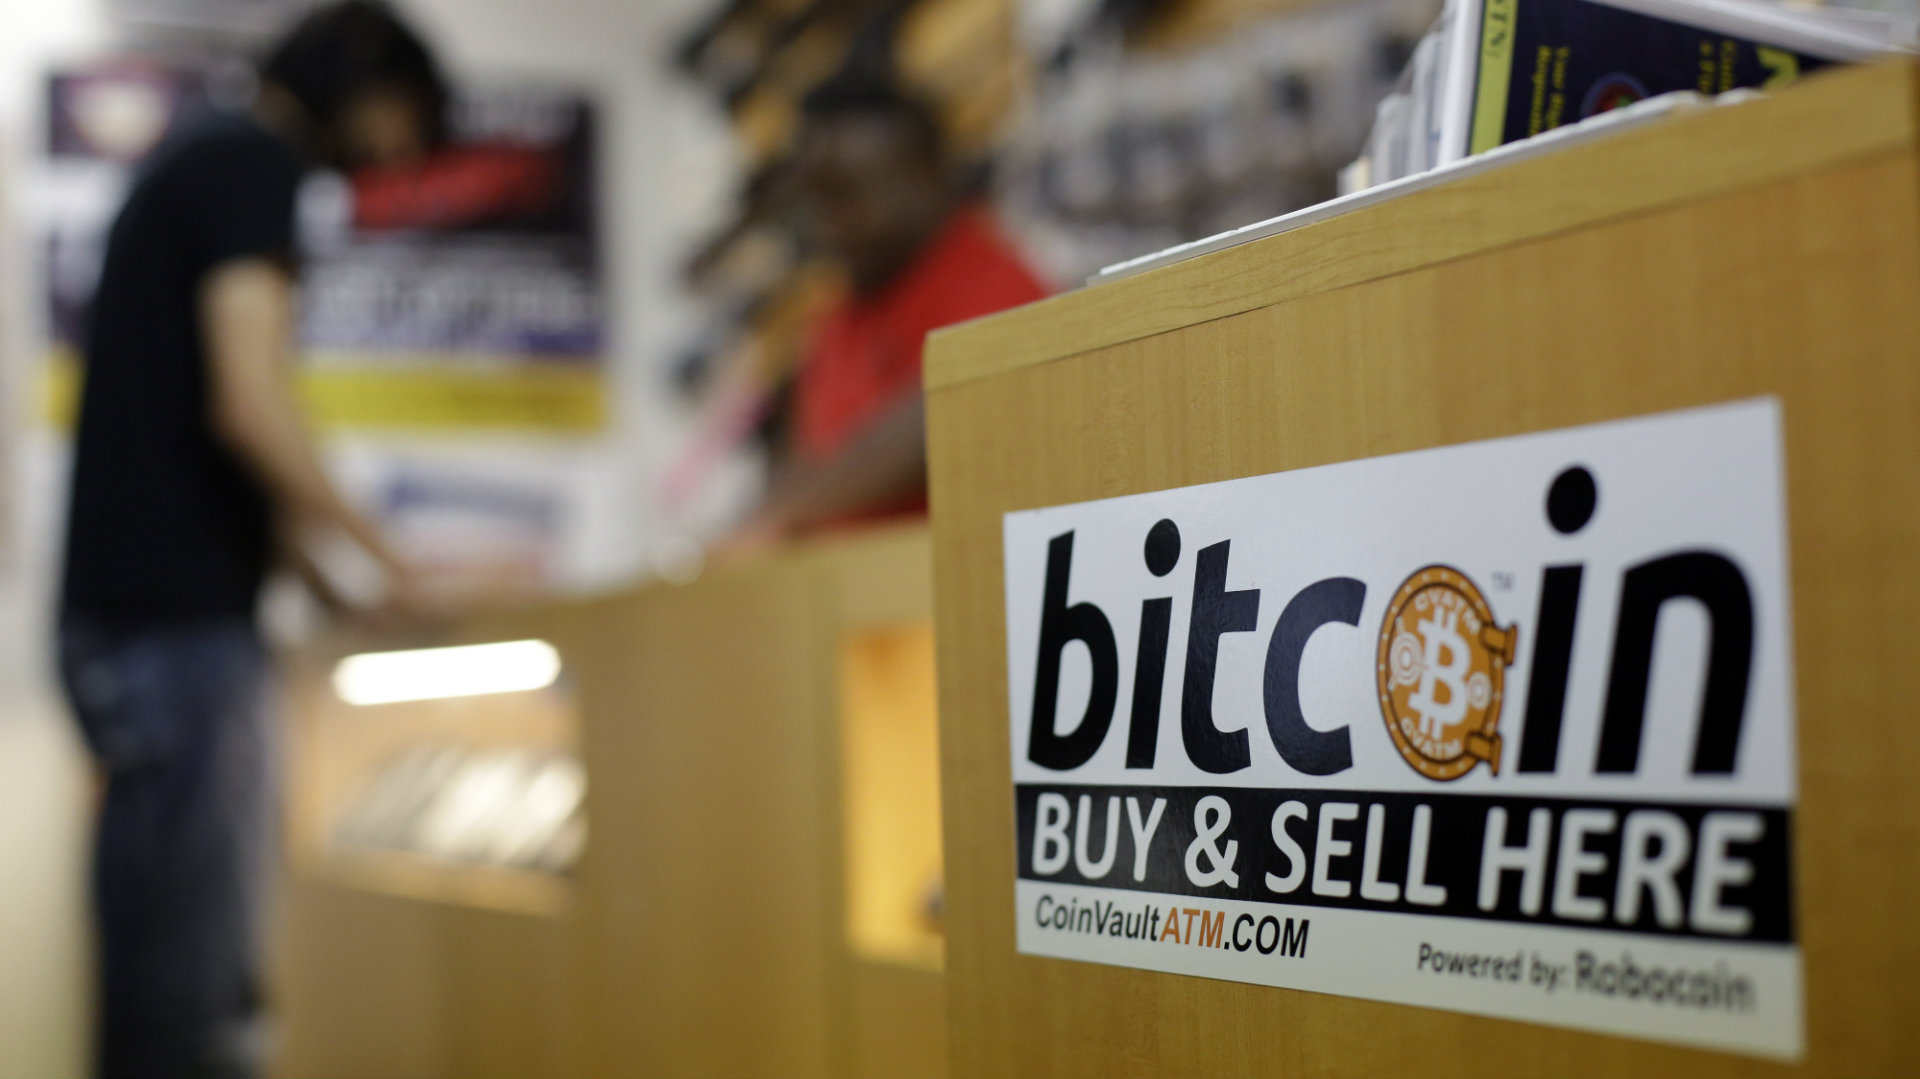 Bruselas alerta de los "riesgos" de invertir en bitcoin y pide una supervisión